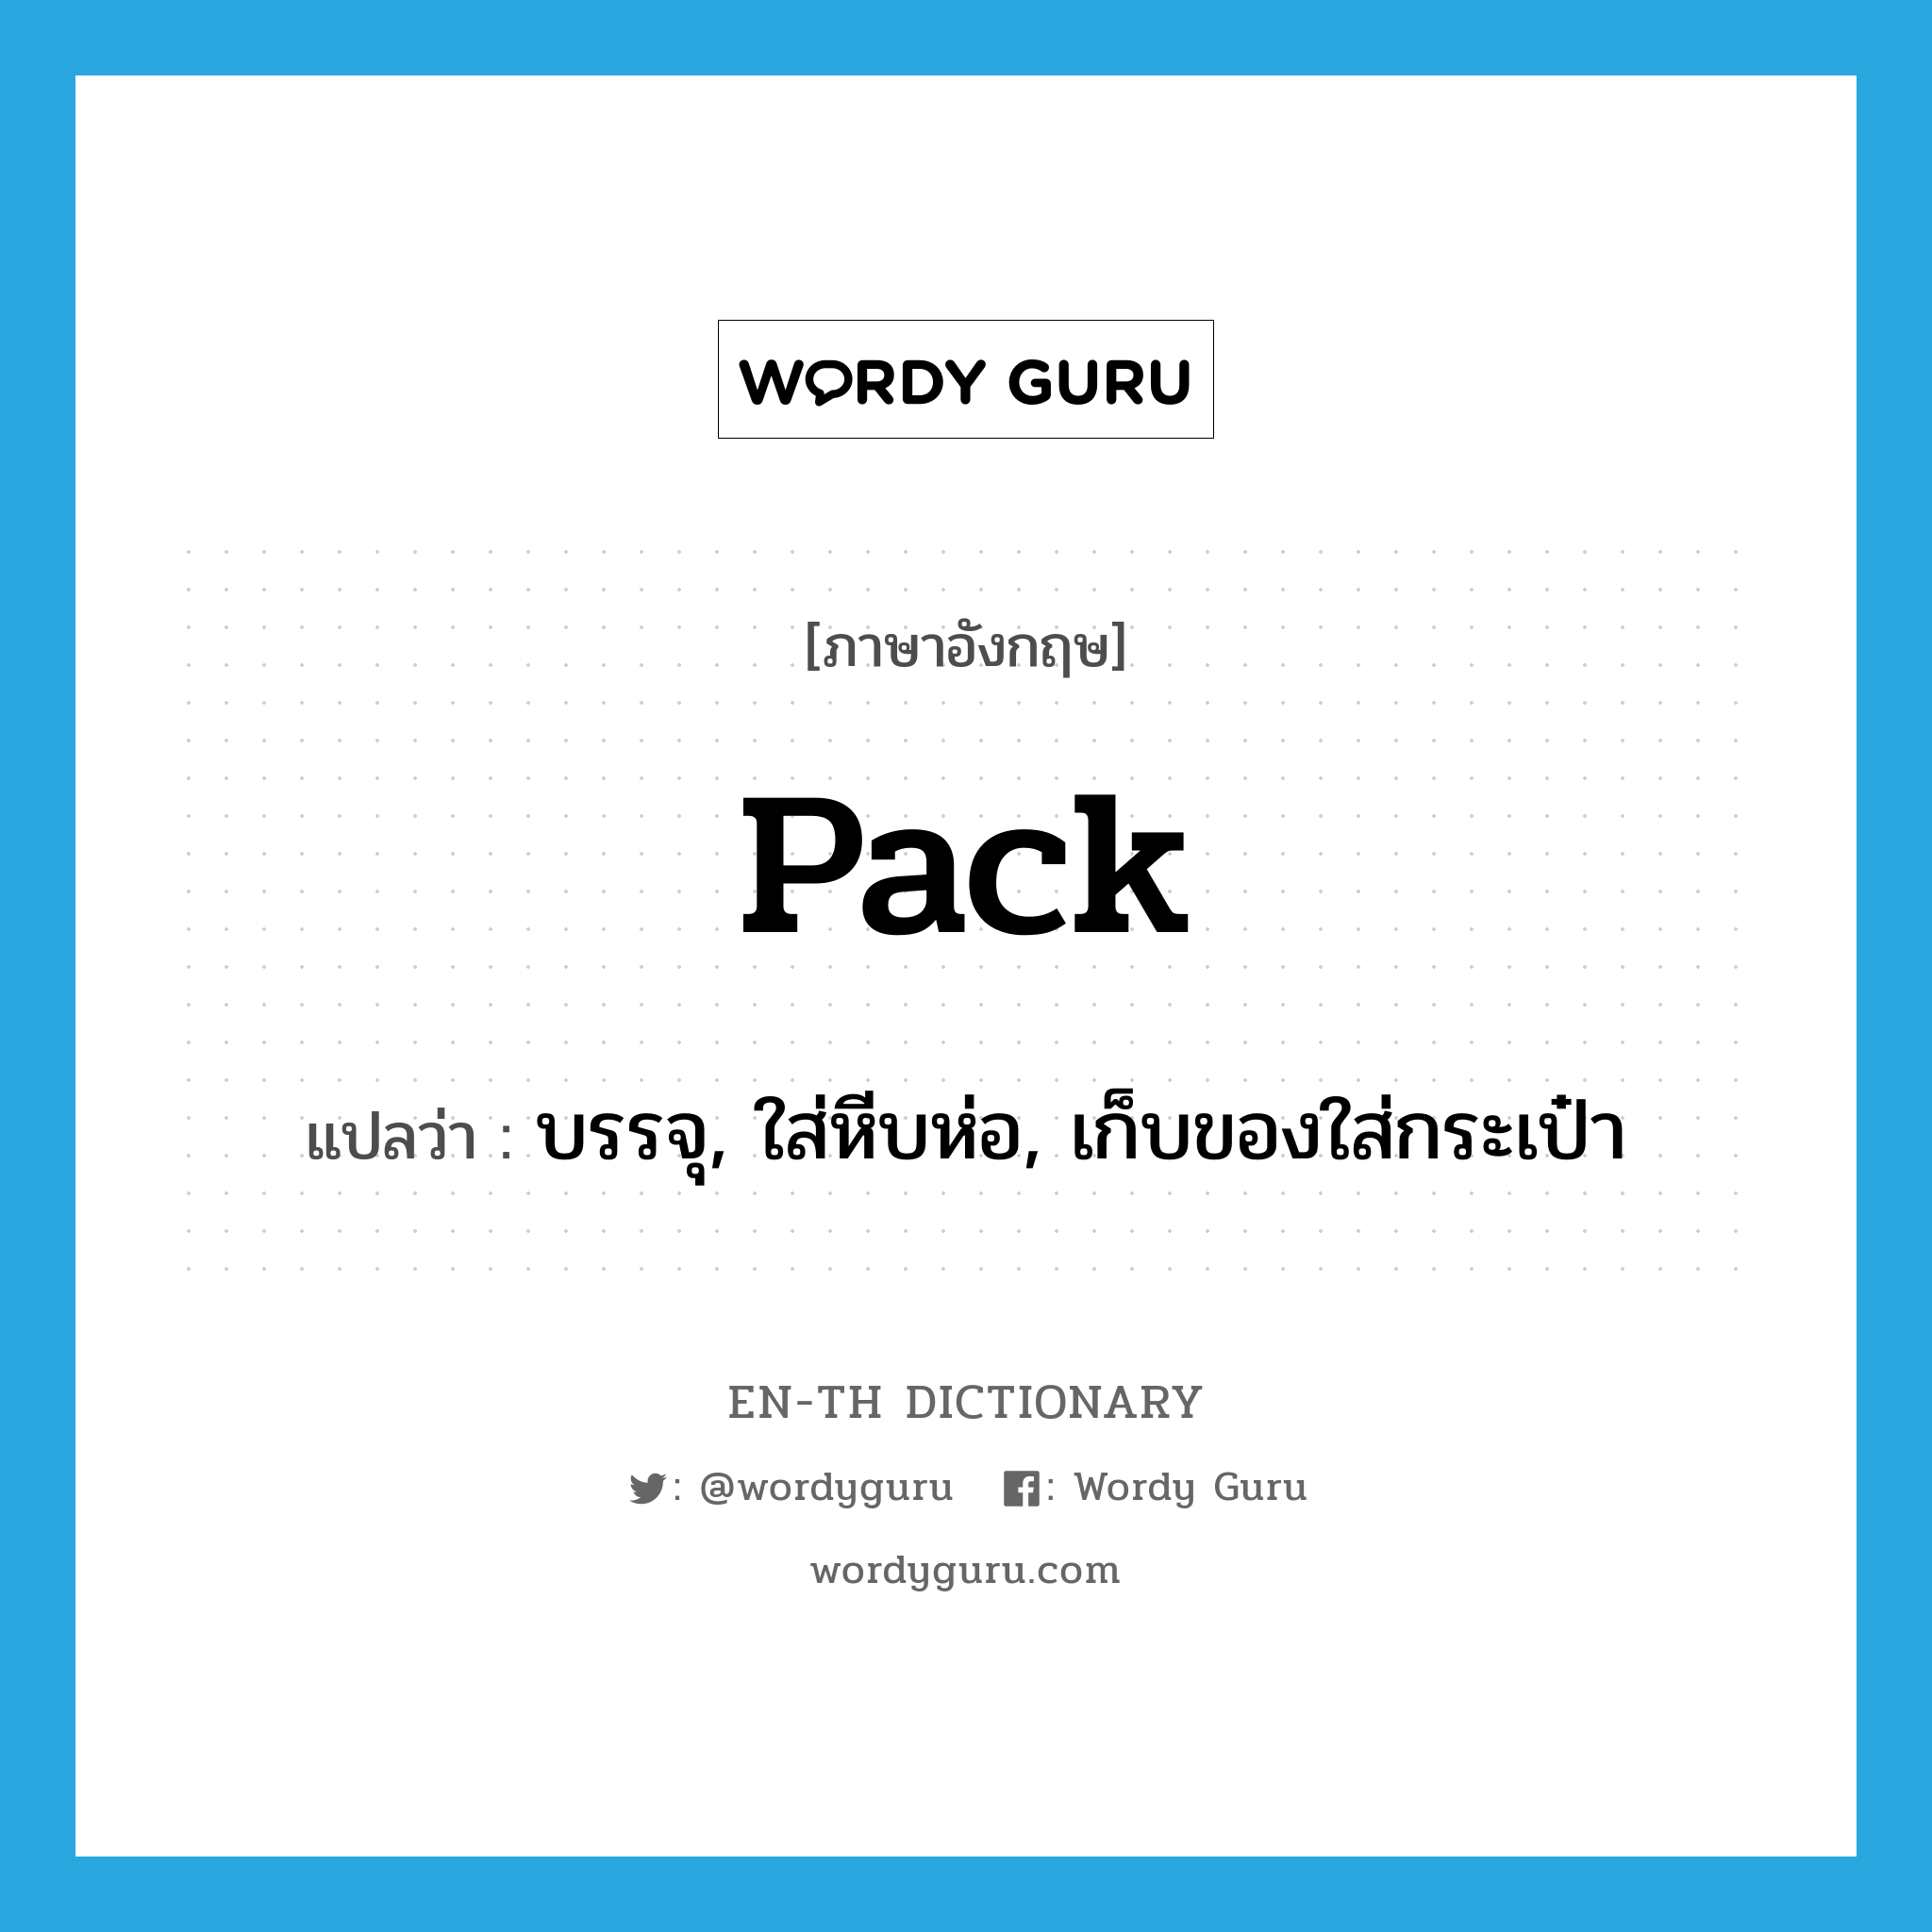 pack แปลว่า?, คำศัพท์ภาษาอังกฤษ pack แปลว่า บรรจุ, ใส่หีบห่อ, เก็บของใส่กระเป๋า ประเภท VT หมวด VT